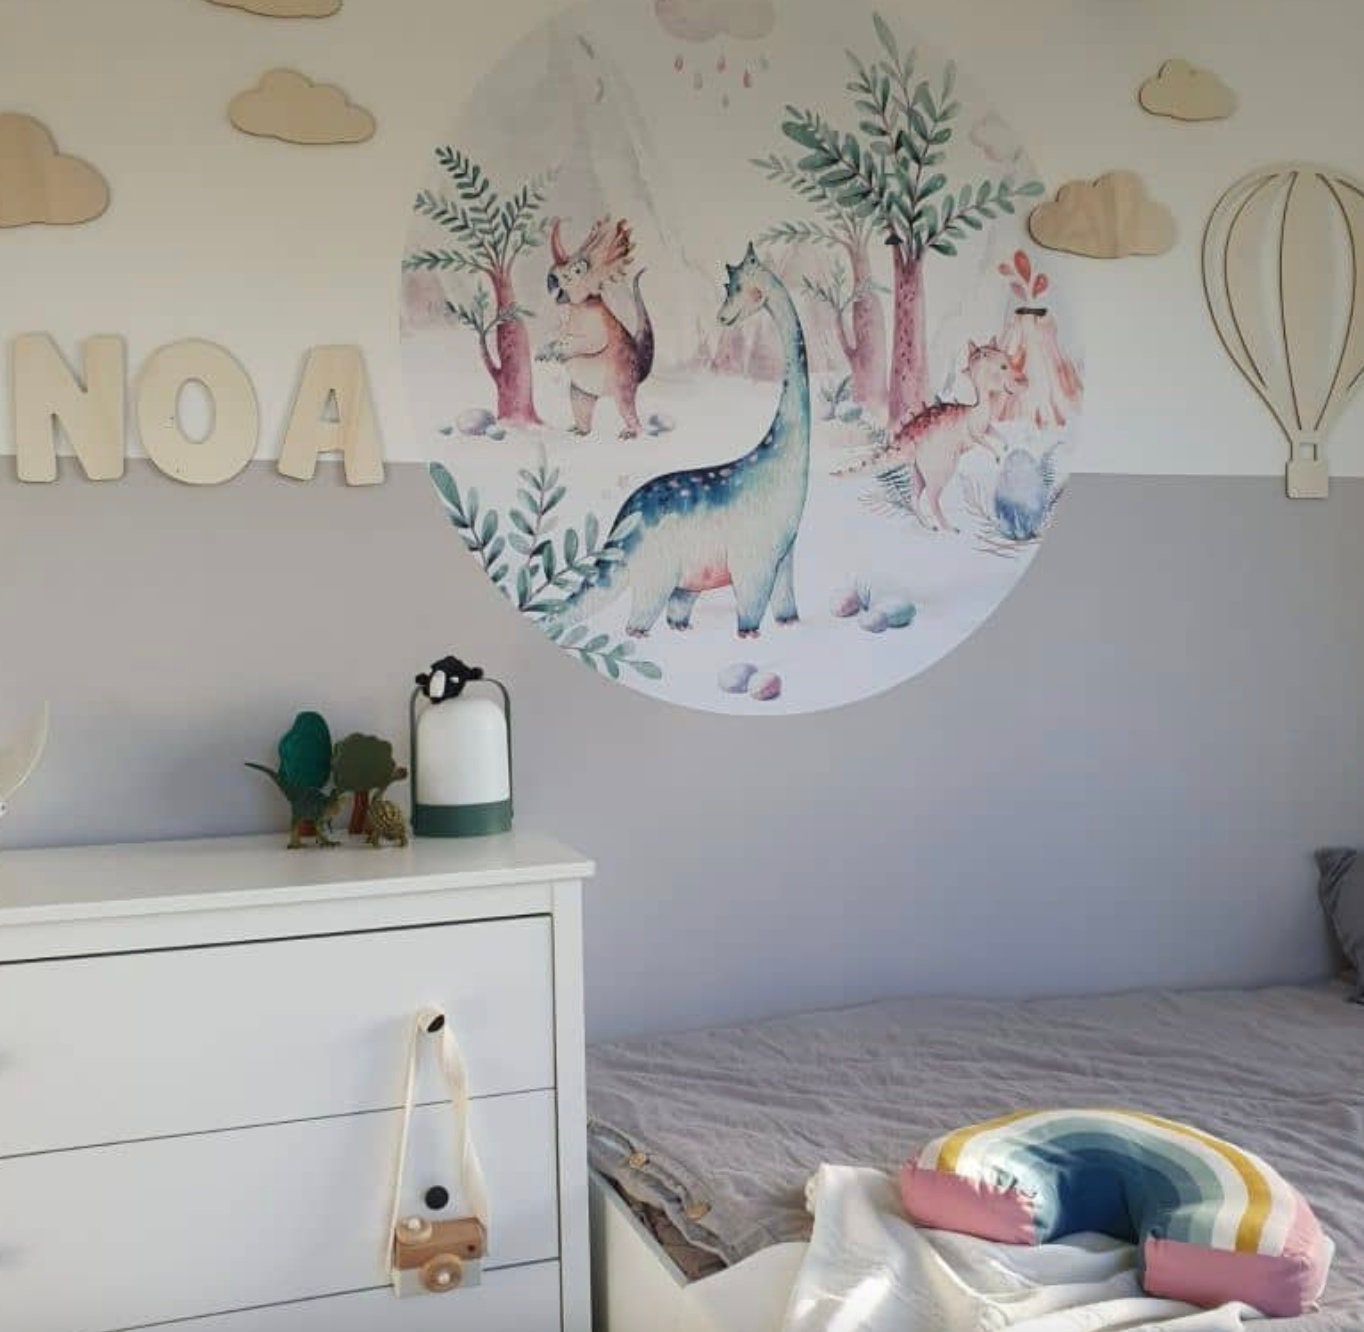 Decoro in legno - Set nuvole (5-pz.) decorazione in legno per bambini camera bambino in legno decorazione parete design kids nuvola